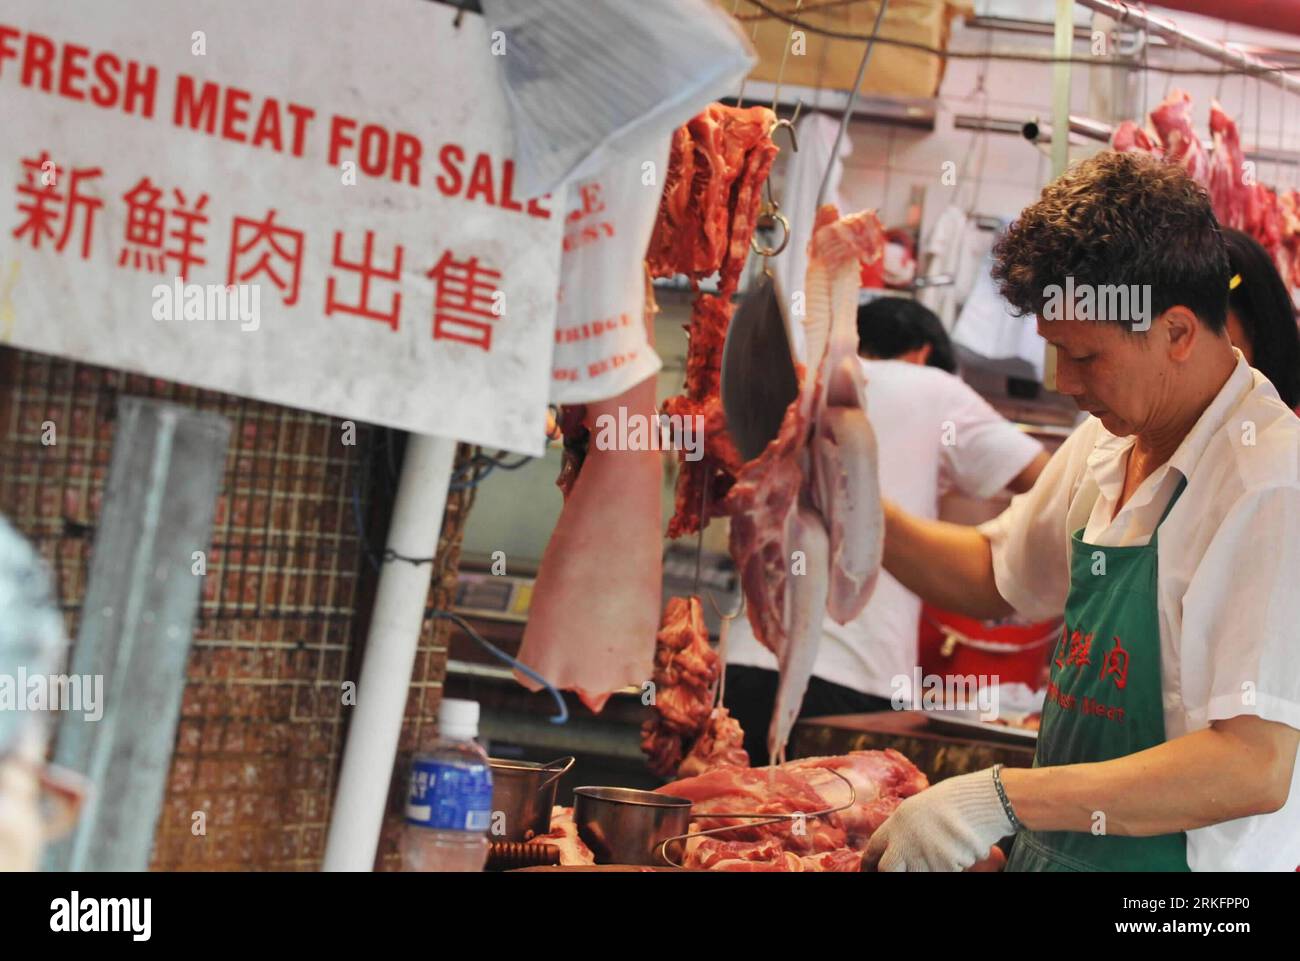 Bildnummer : 55447448 Datum : 11.06.2011 Copyright : imago/Xinhua (110611) -- HONG KONG, 11 juin 2011 (Xinhua) -- Un commerçant coupe du porc pour le consommateur sur un marché de Hong Kong, dans le sud de la Chine, le 11 juin 2011. Ng Fung Hong Limited, le seul agent responsable du transport du bétail et de la viande congelée du continent chinois à Hong Kong, a annoncé vendredi une hausse des prix commerciaux de 3,29 pour cent et 2,89 pour cent respectivement pour la race fine de bovins et les bovins gras. Le prix de détail du porc à Hong Kong a augmenté de 15 pour cent depuis avril. (Xinhua/Huang Xiaoyong) (mcg) CHINE-HONG KONG-BŒUF ET HAUSSE DES PRIX DU PORC Banque D'Images